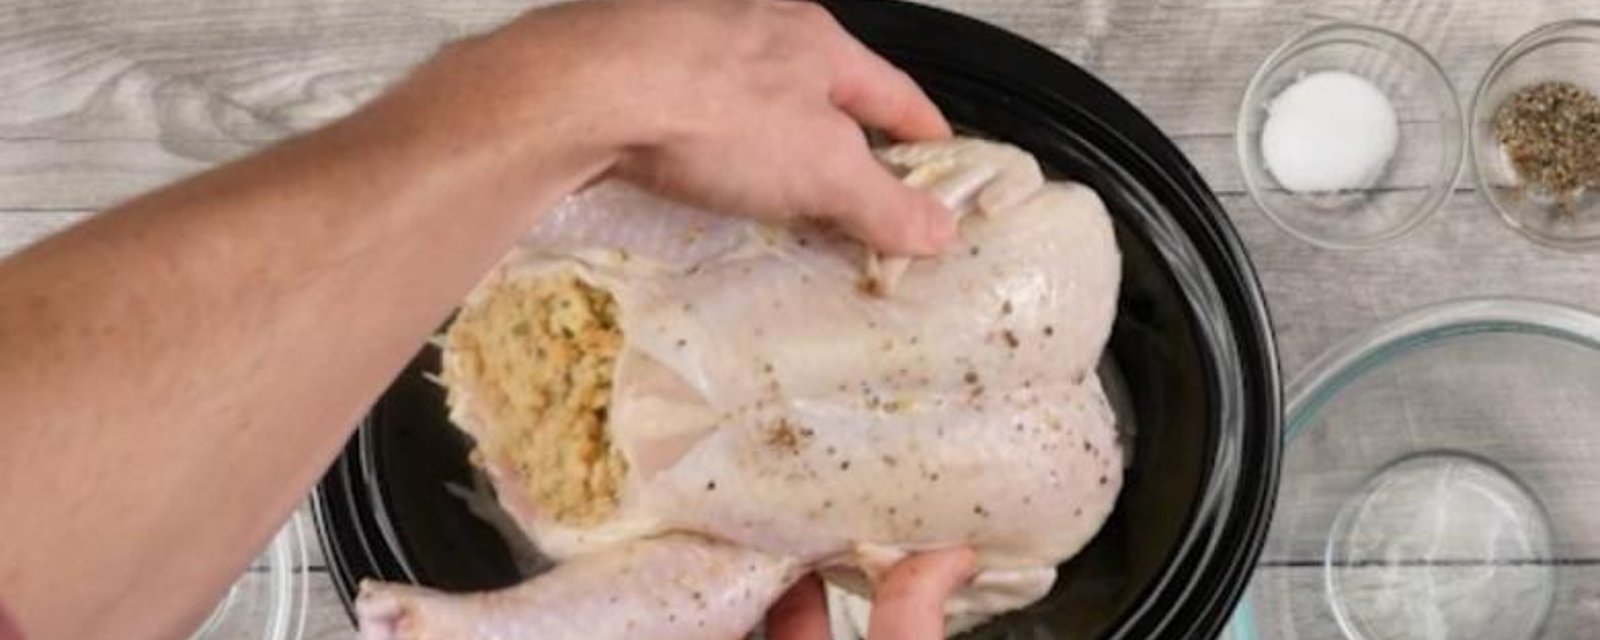 Comment cuire un poulet entier avec farce à la mijoteuse, la recette LA PLUS FACILE du web spécialement pour vous!